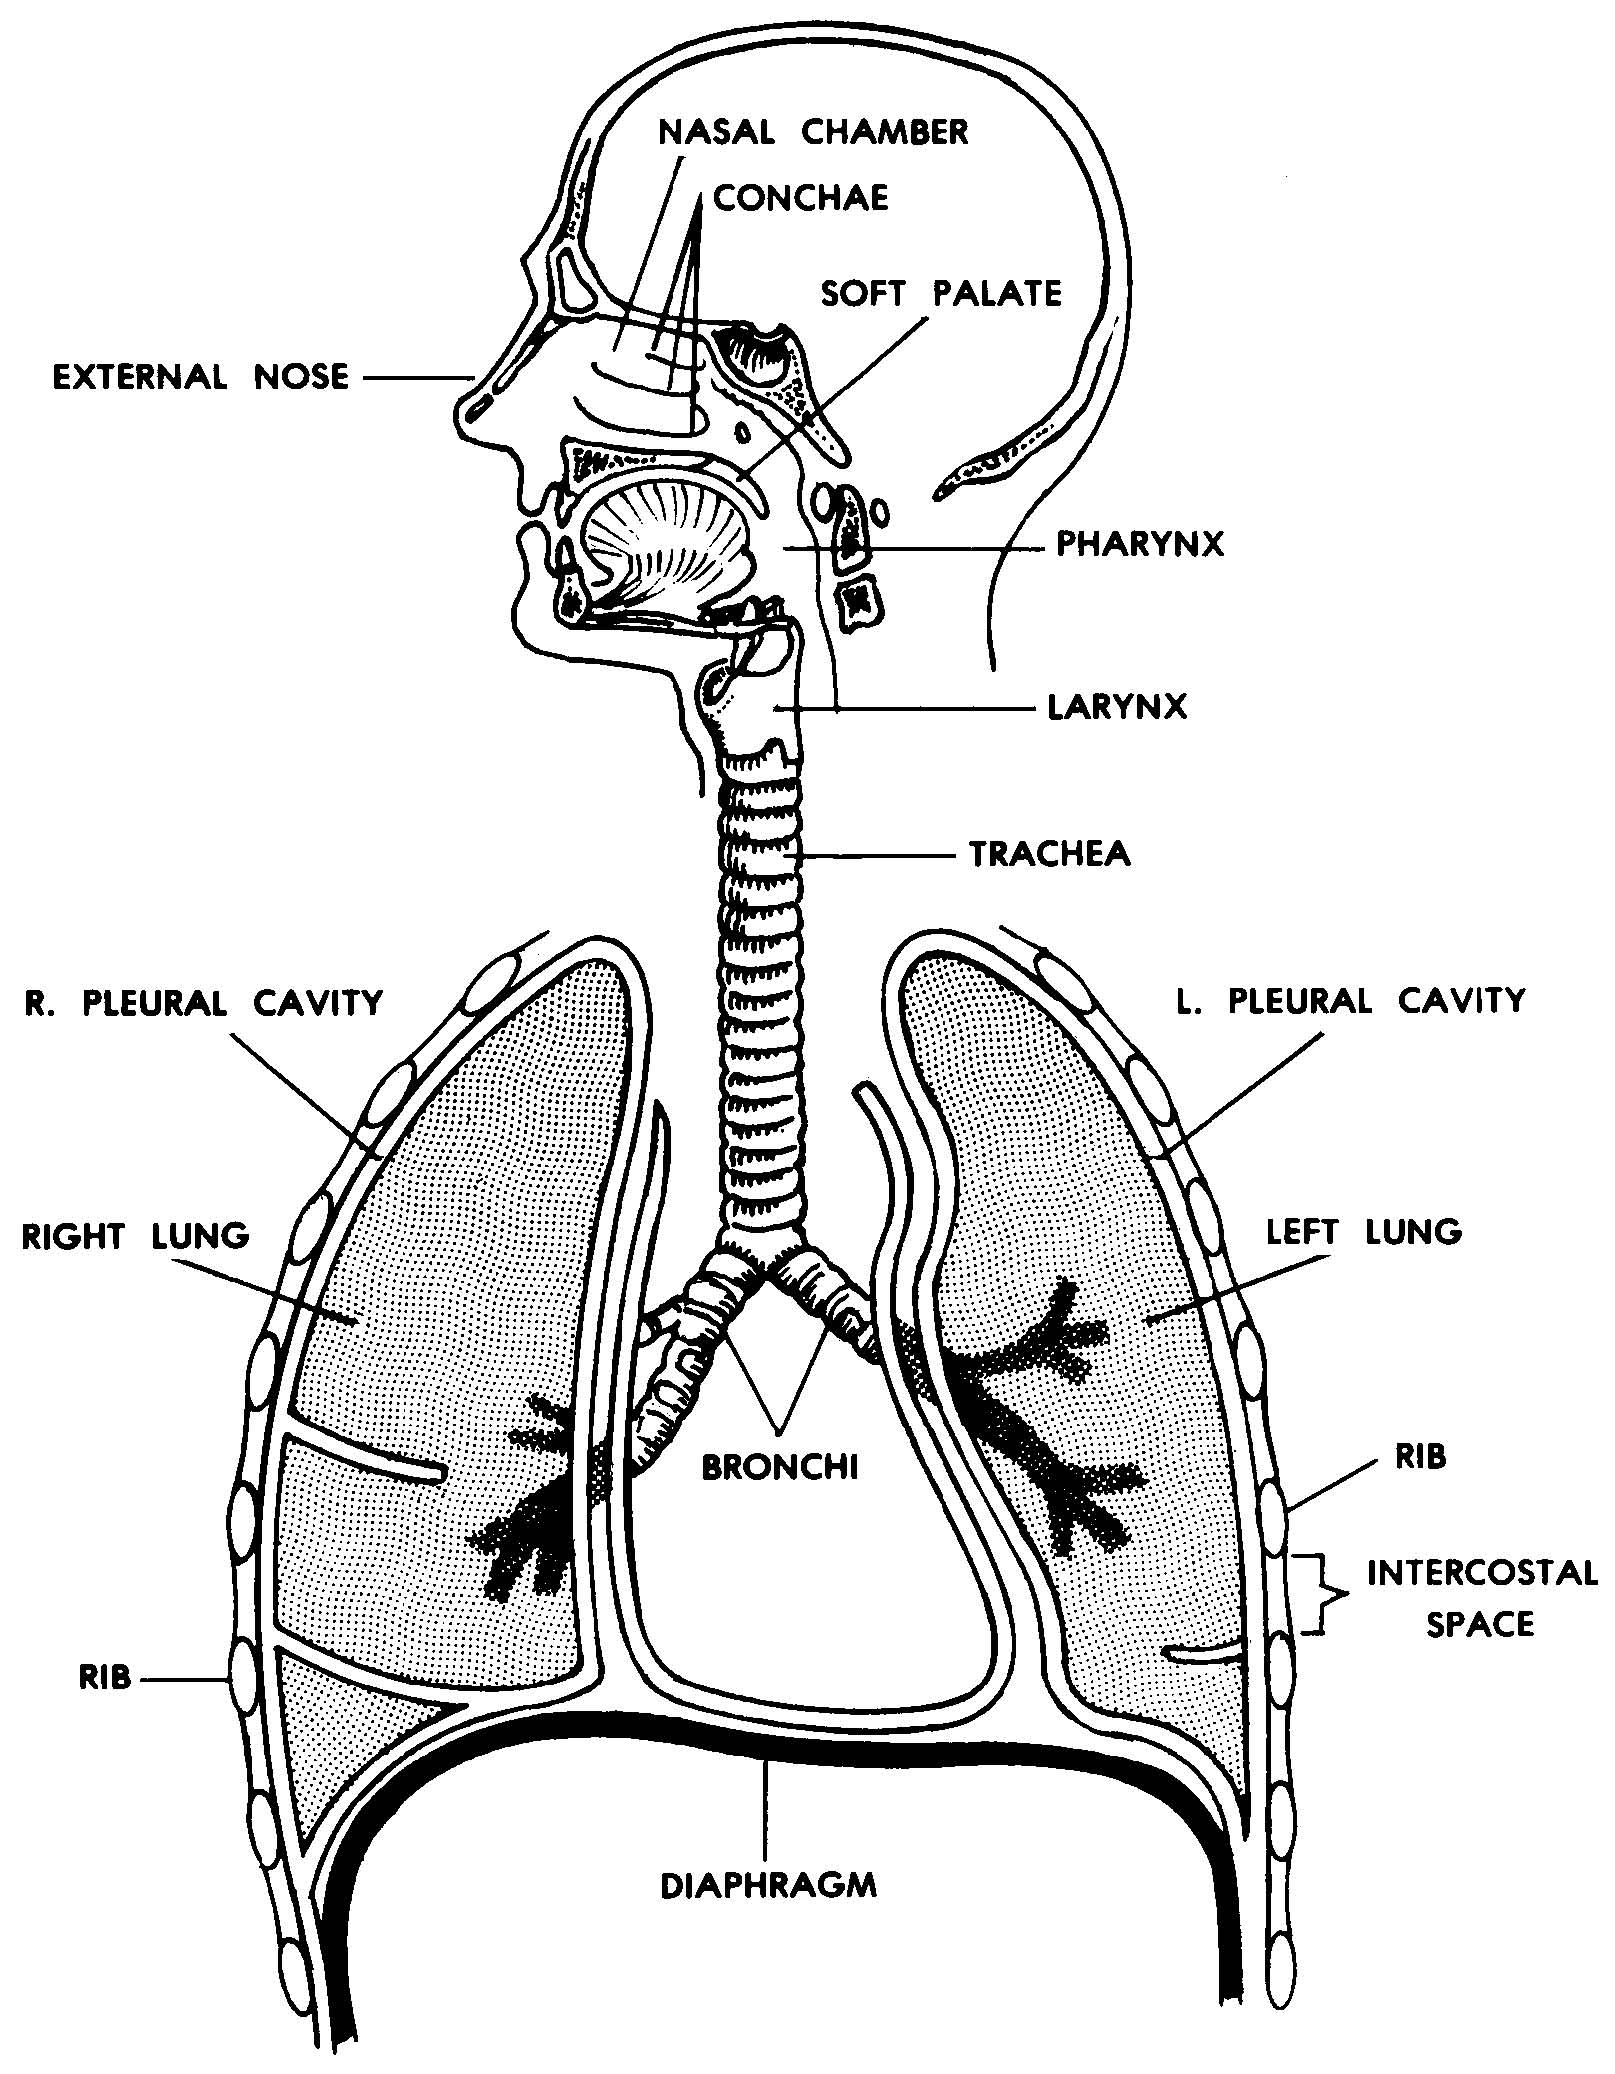 呼吸系统疾病